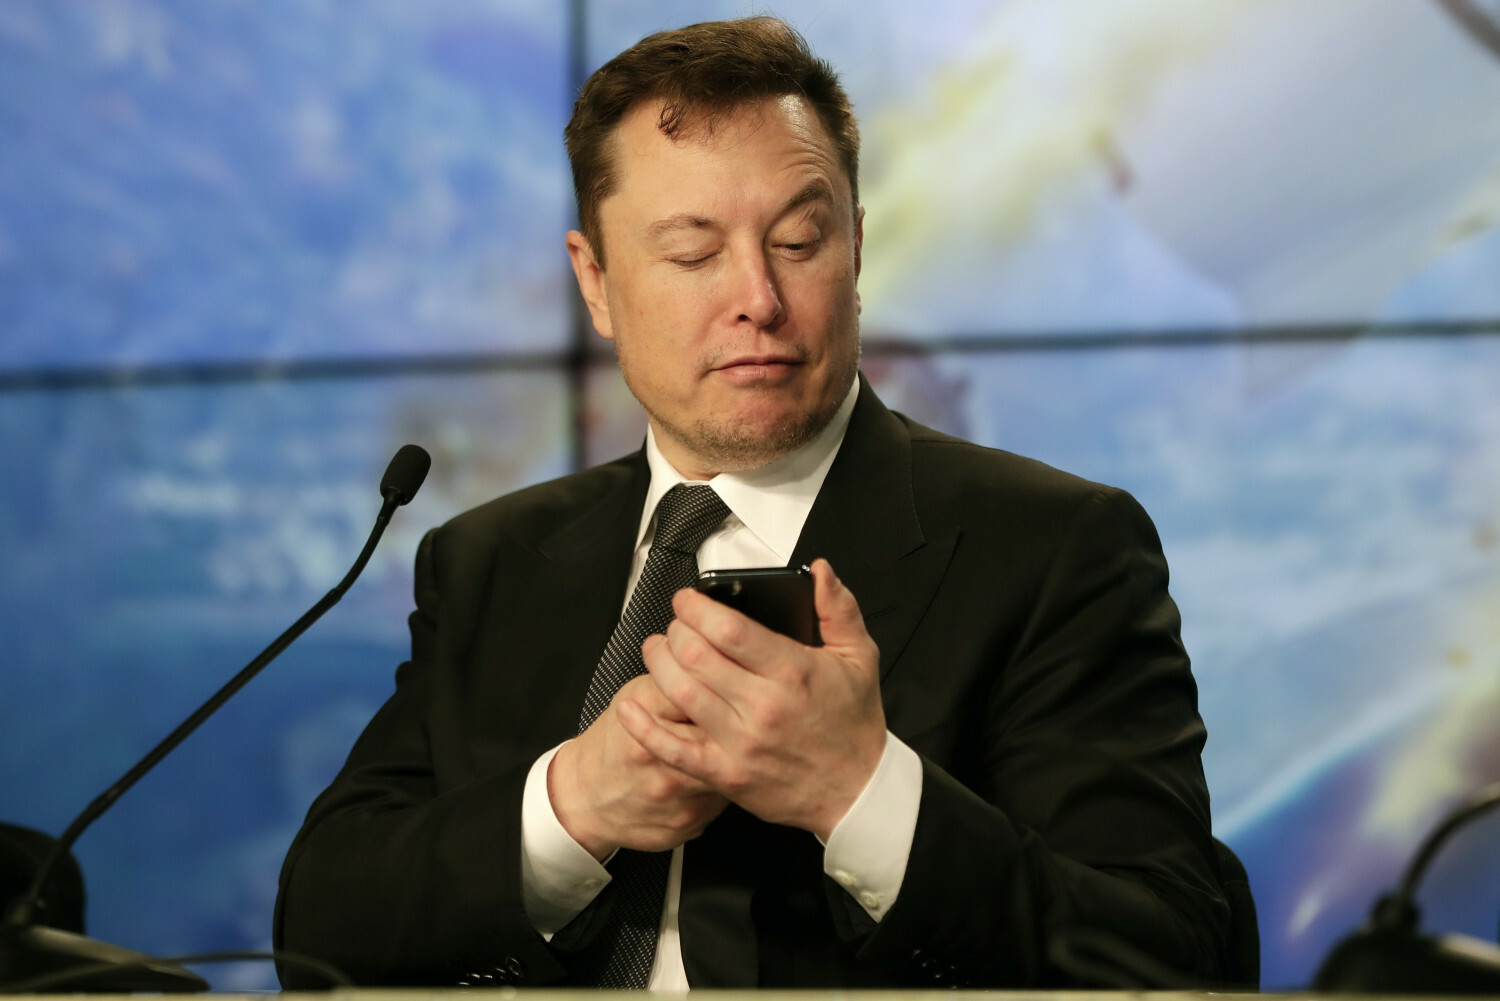 Musk verspricht, sein Smartphone zu veröffentlichen, wenn Apple und Google Twitter aus dem App Store und Google Play entfernen